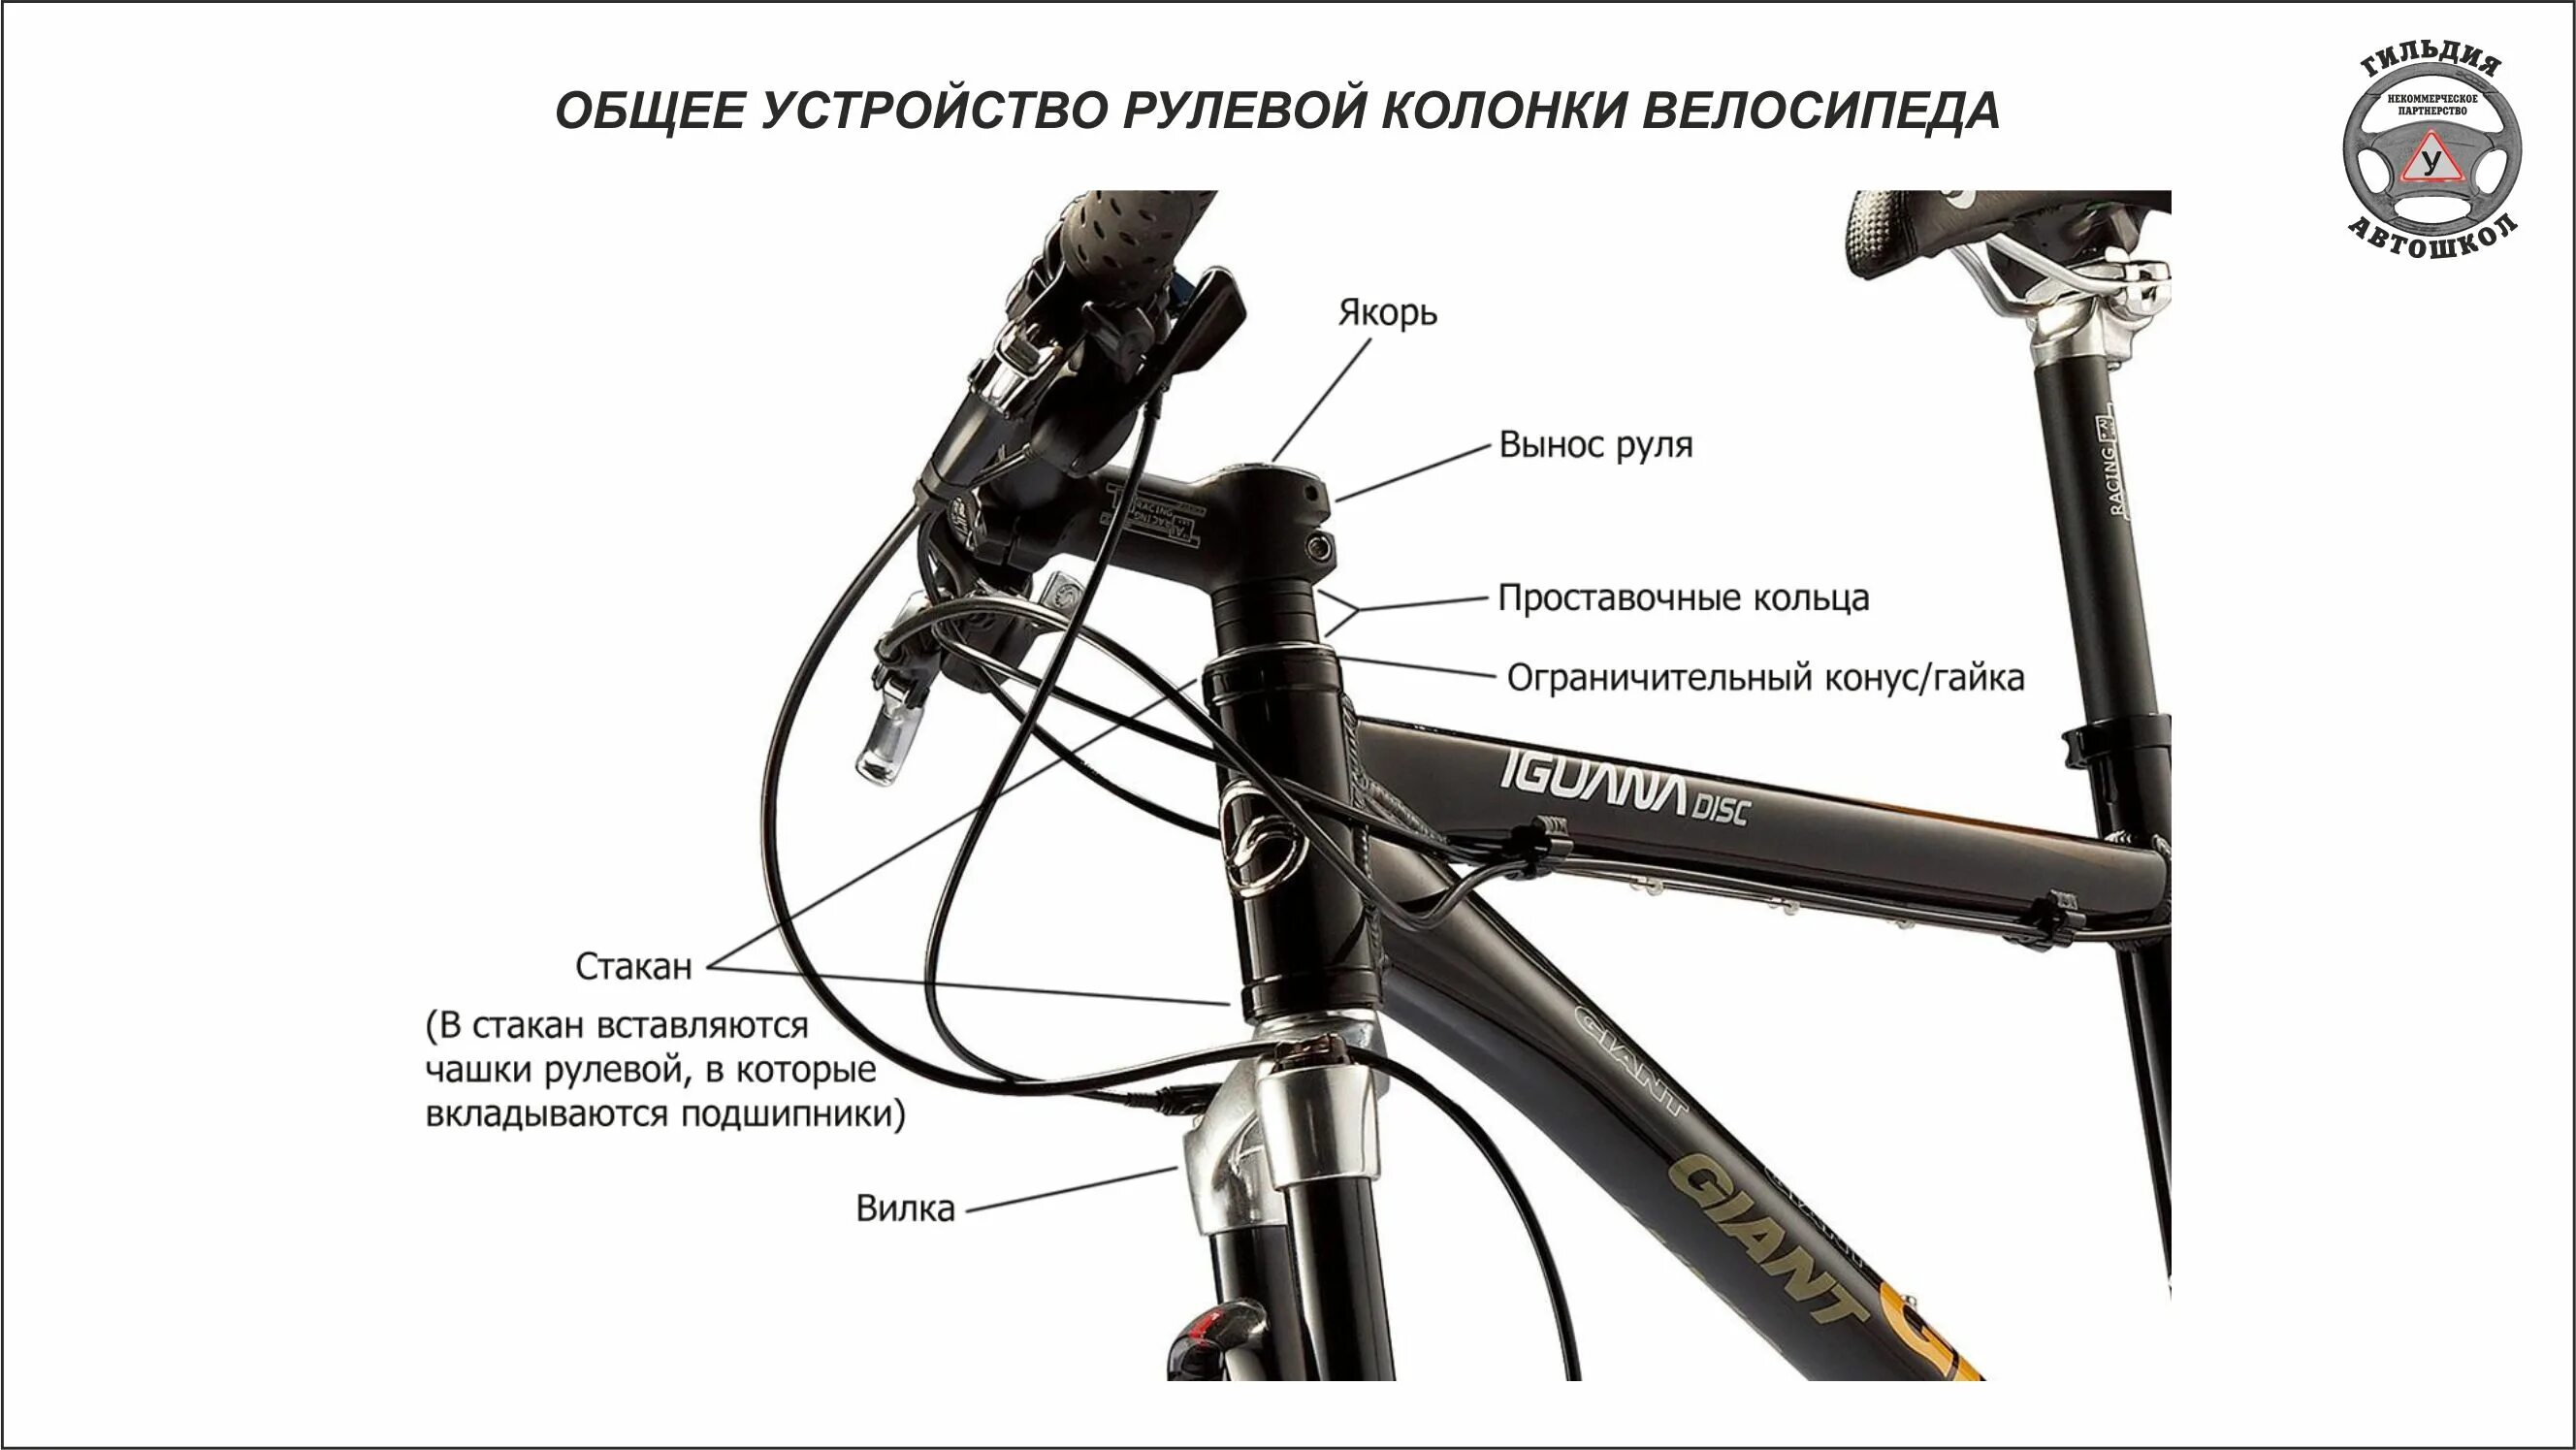 Конструкция рулевой колонки велосипеда стелс 950md. Рулевая колонка велосипеда стелс. Рулевая колонка велосипеда стелс навигатор. Сборка руля велосипеда стелс. Сборка вилки велосипеда